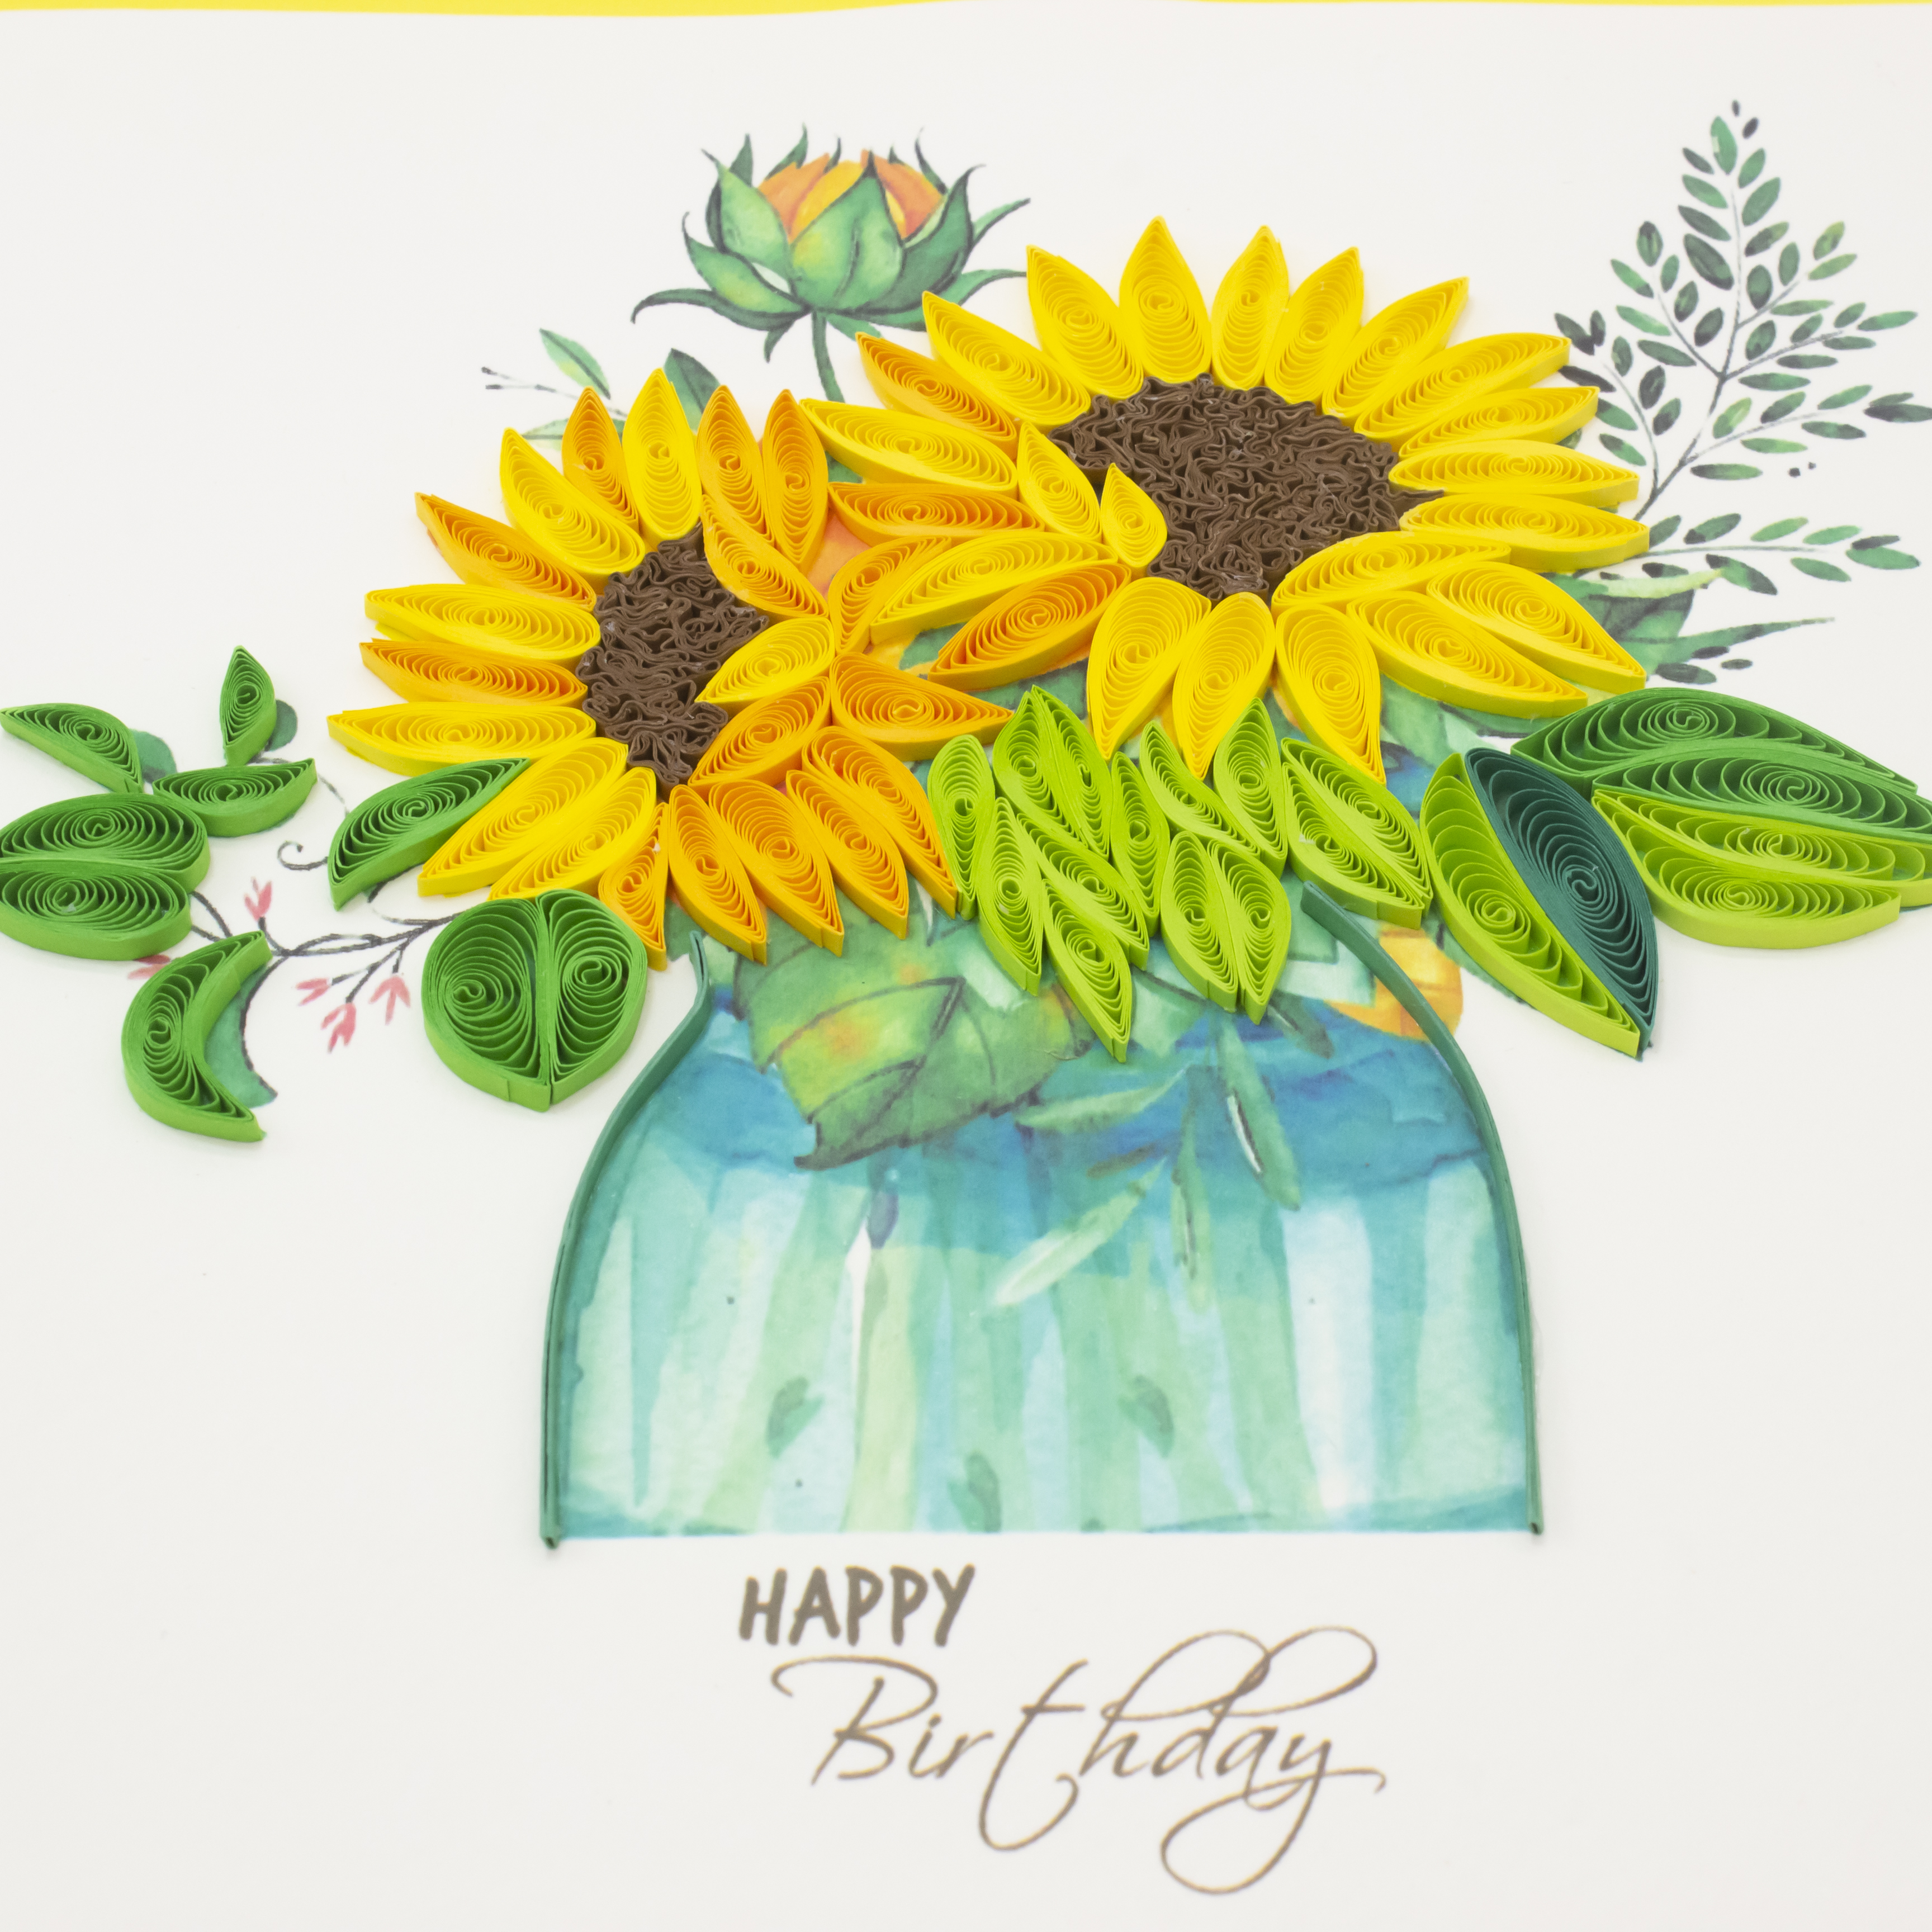 Thiệp Handmade - Thiệp Bình hoa hướng dương nghệ thuật giấy xoắn (Quilling Card) - Tặng Kèm Khung Giấy Để Bàn - Thiệp chúc mừng sinh nhật, kỷ niệm, tình yêu, cảm ơn…